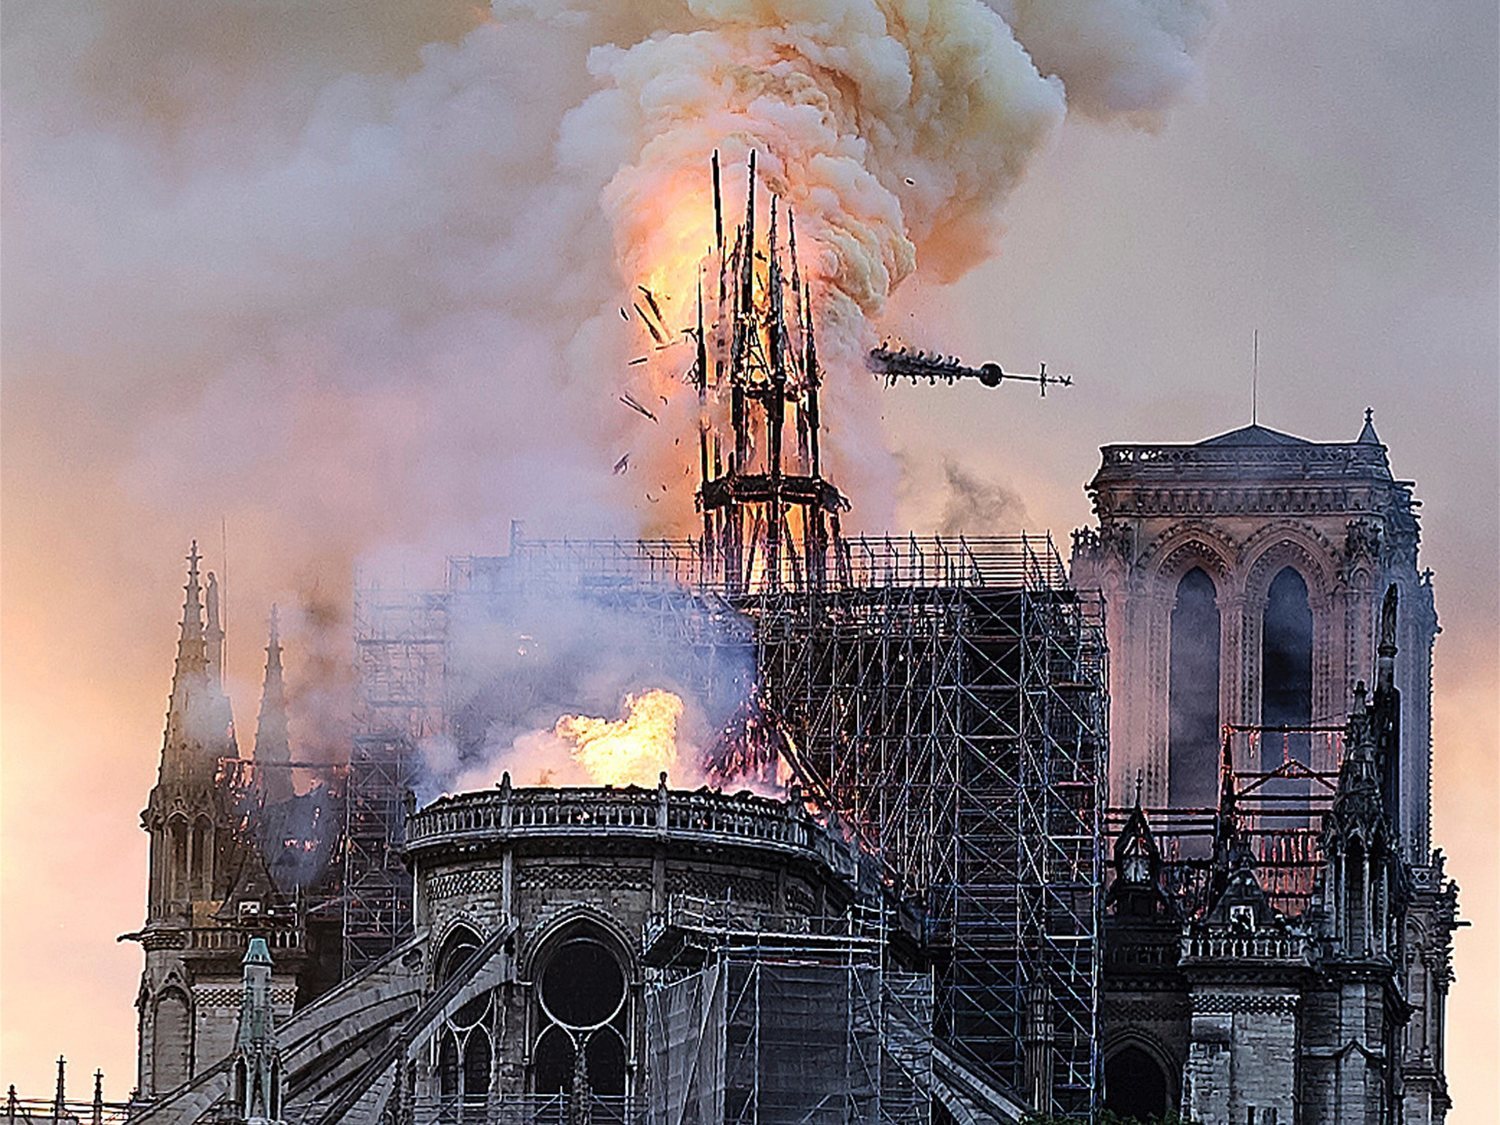 La falsa teoría que afirma que Nostradamus ya predijo el incendio de Notre Dame en sus escritos